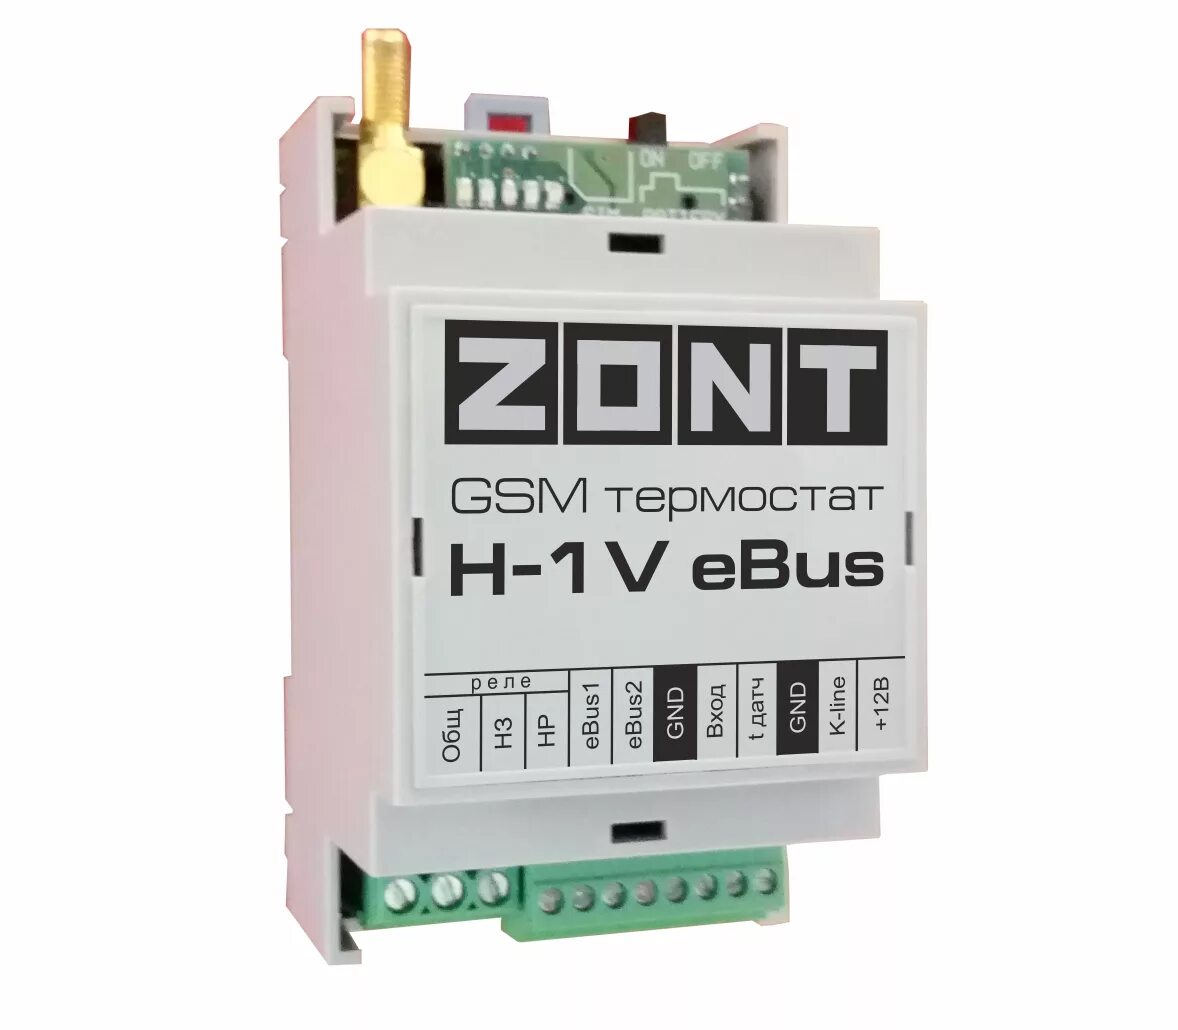 Котлов zont h 1v. Zont-h1v EBUS GSM-термостат. Protherm блок дистанционного управления котлом GSM-climate Zont h-1v EBUS. GSM-термостат Zont h-1v. GSM-термостат Zont h-1.